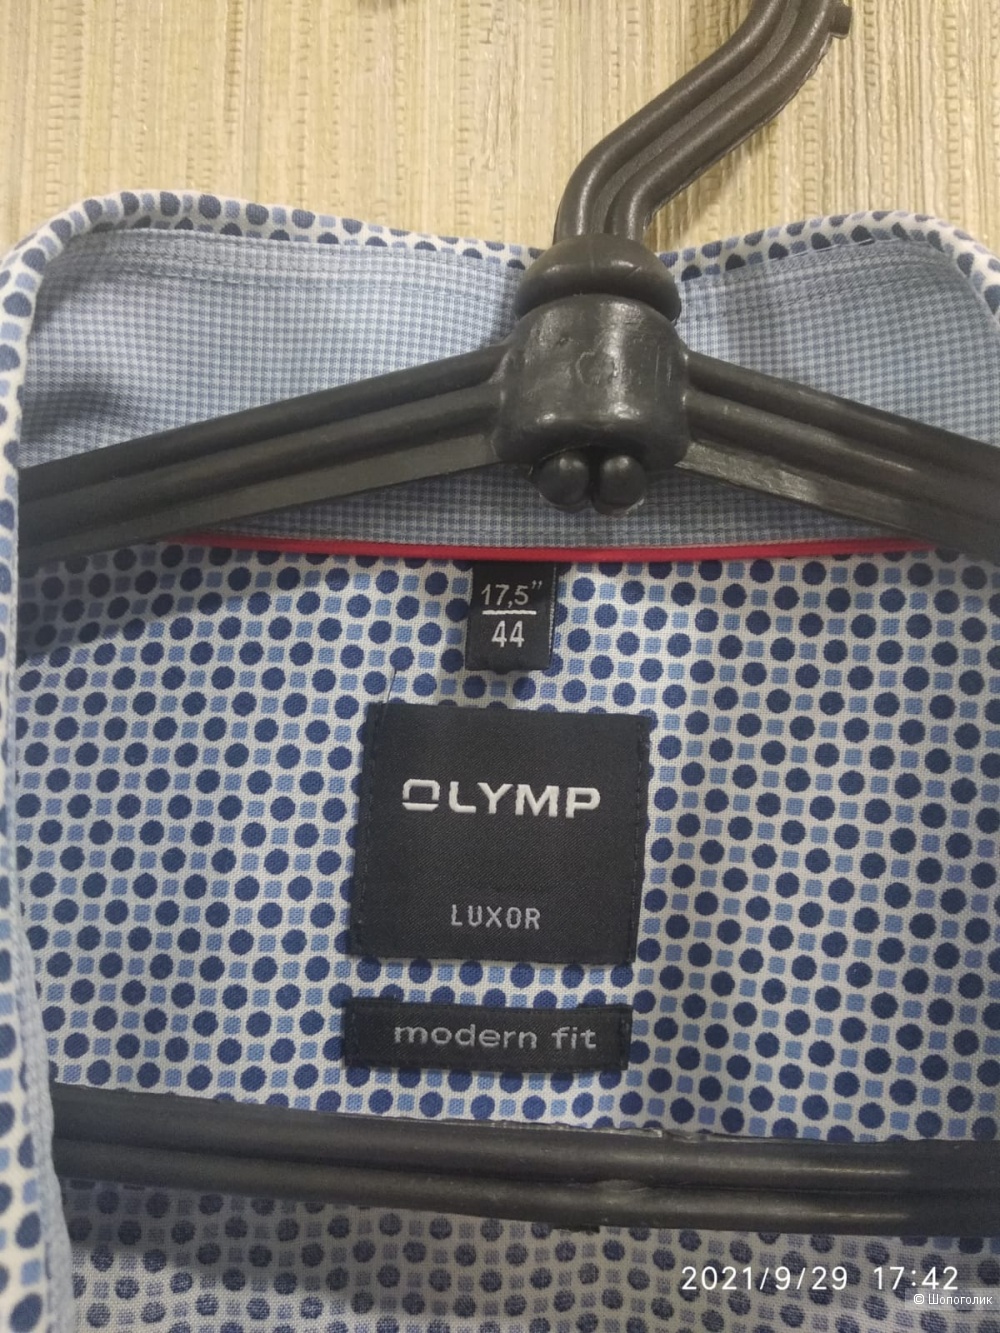 Рубашка Olymp, размер 44 (17,5")